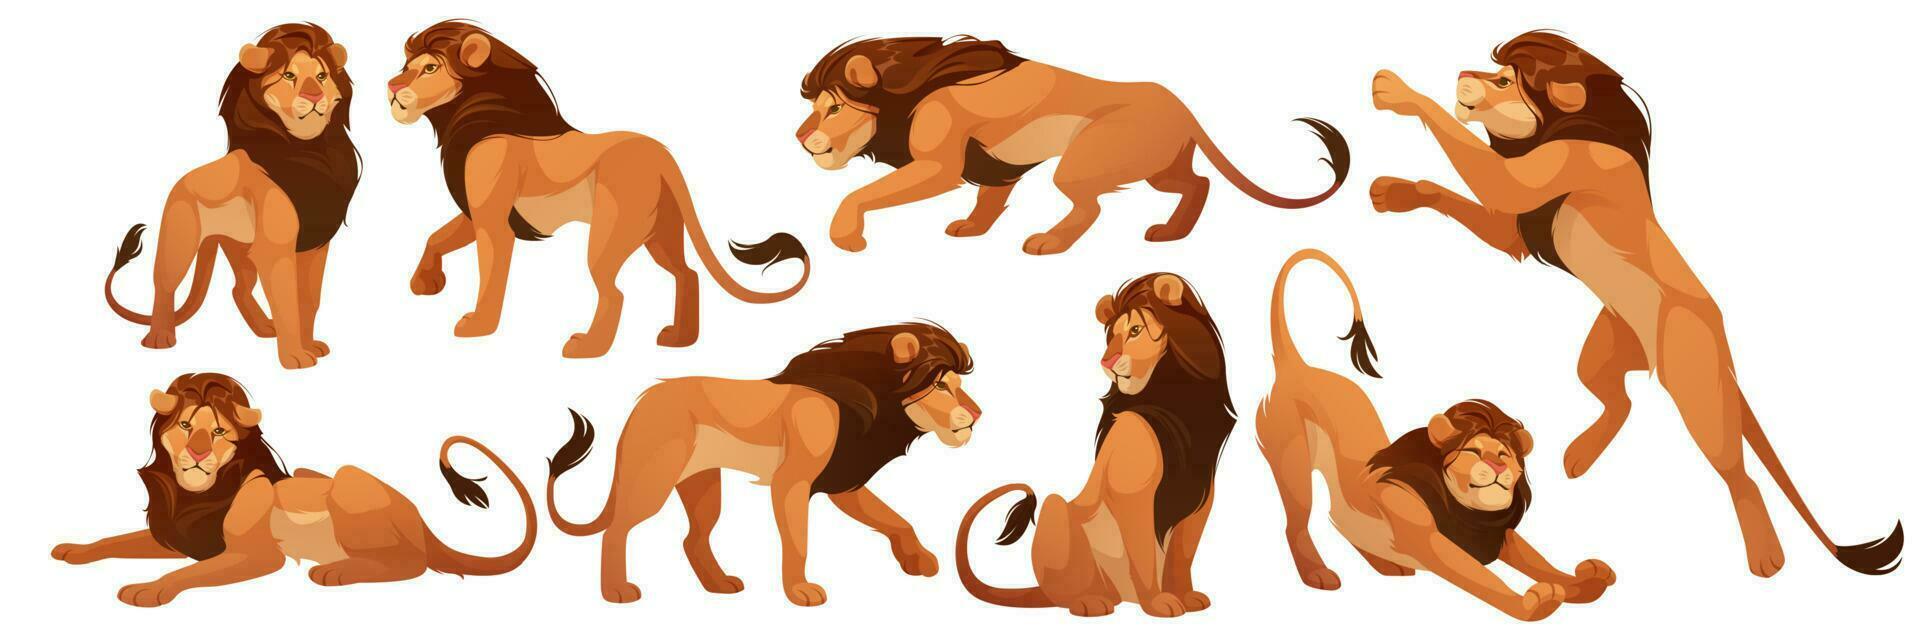 lejon vild afrikansk djur, leo kung isolerat uppsättning vektor